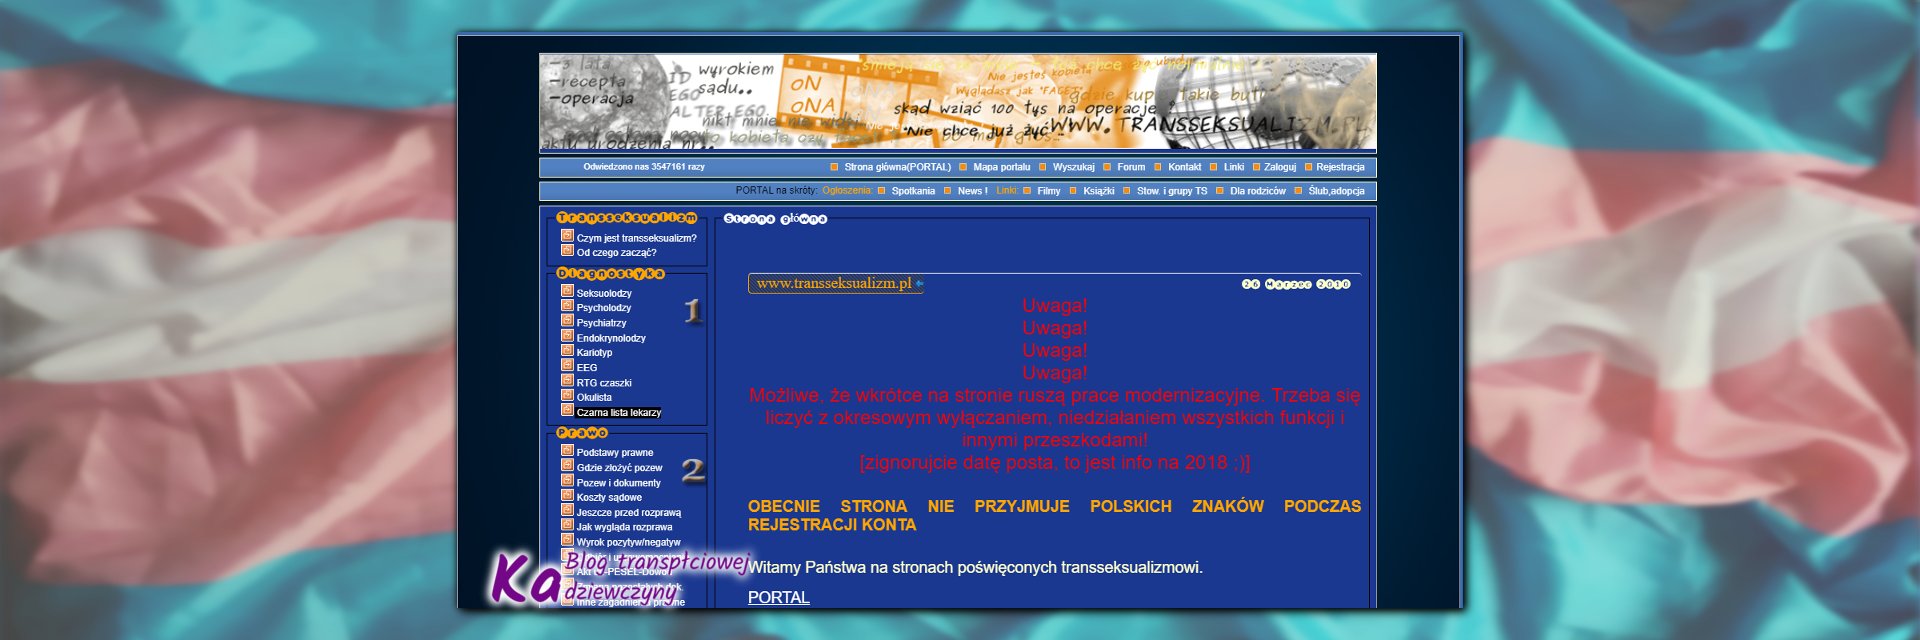 niebieskie forum, wygląd portalu